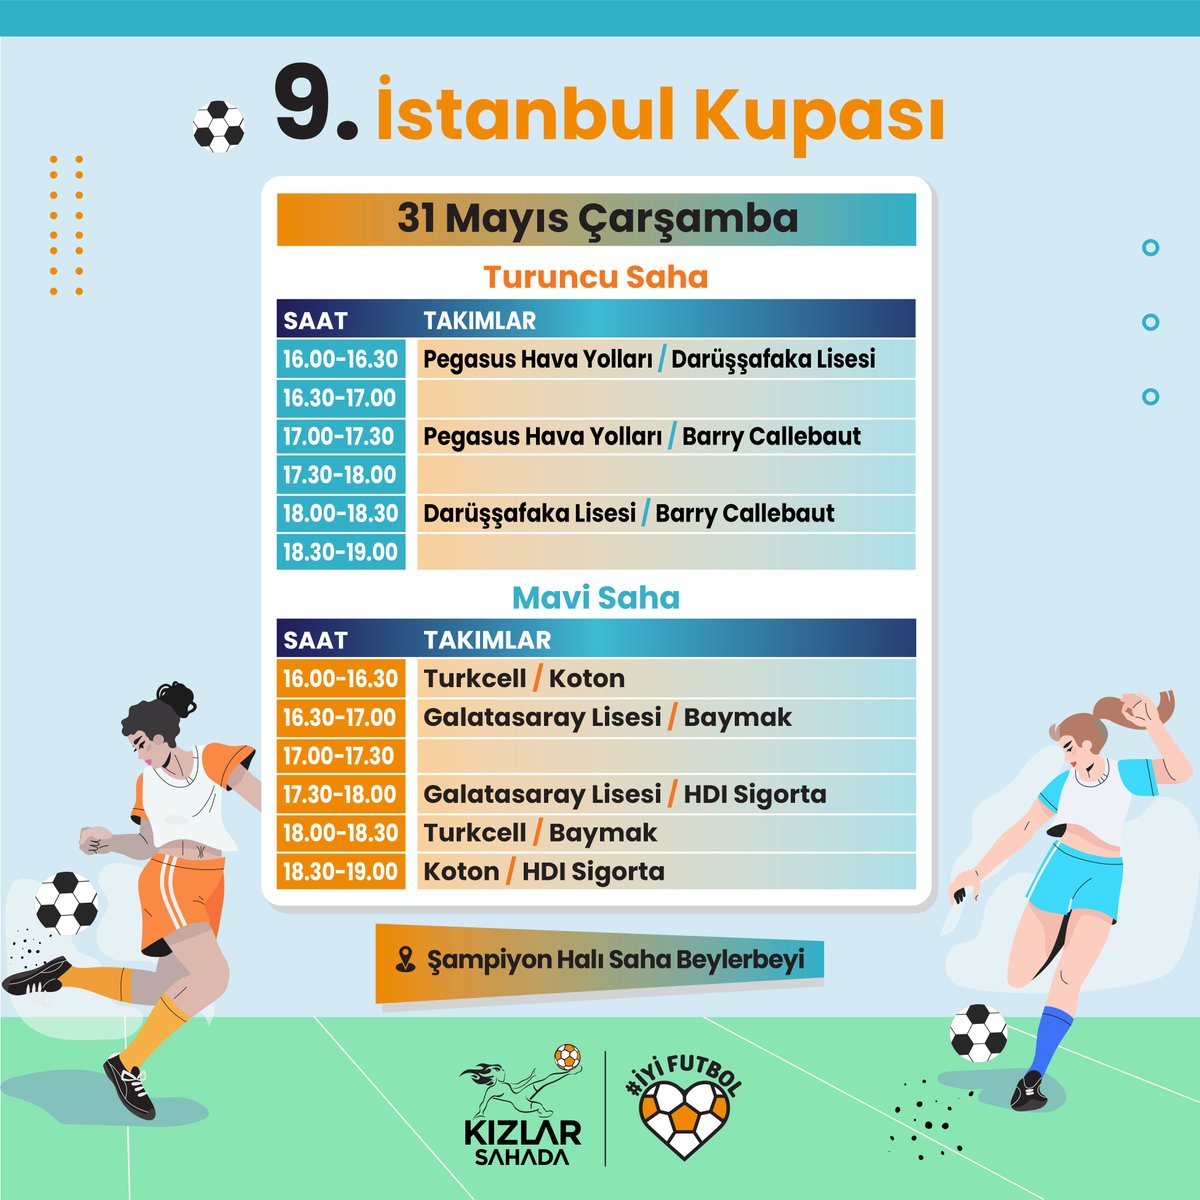 9. İstanbul Kupası fikstürü açıklandı! İşte maç programı ⚽️ Siz de bu heyecana ortak olmak isterseniz; profilimizdeki linkten bilet satın alabilir, hediye edebilir veya bağış yapabilirsiniz.🌟 Bilet için👉🏼bit.ly/42DE7uE